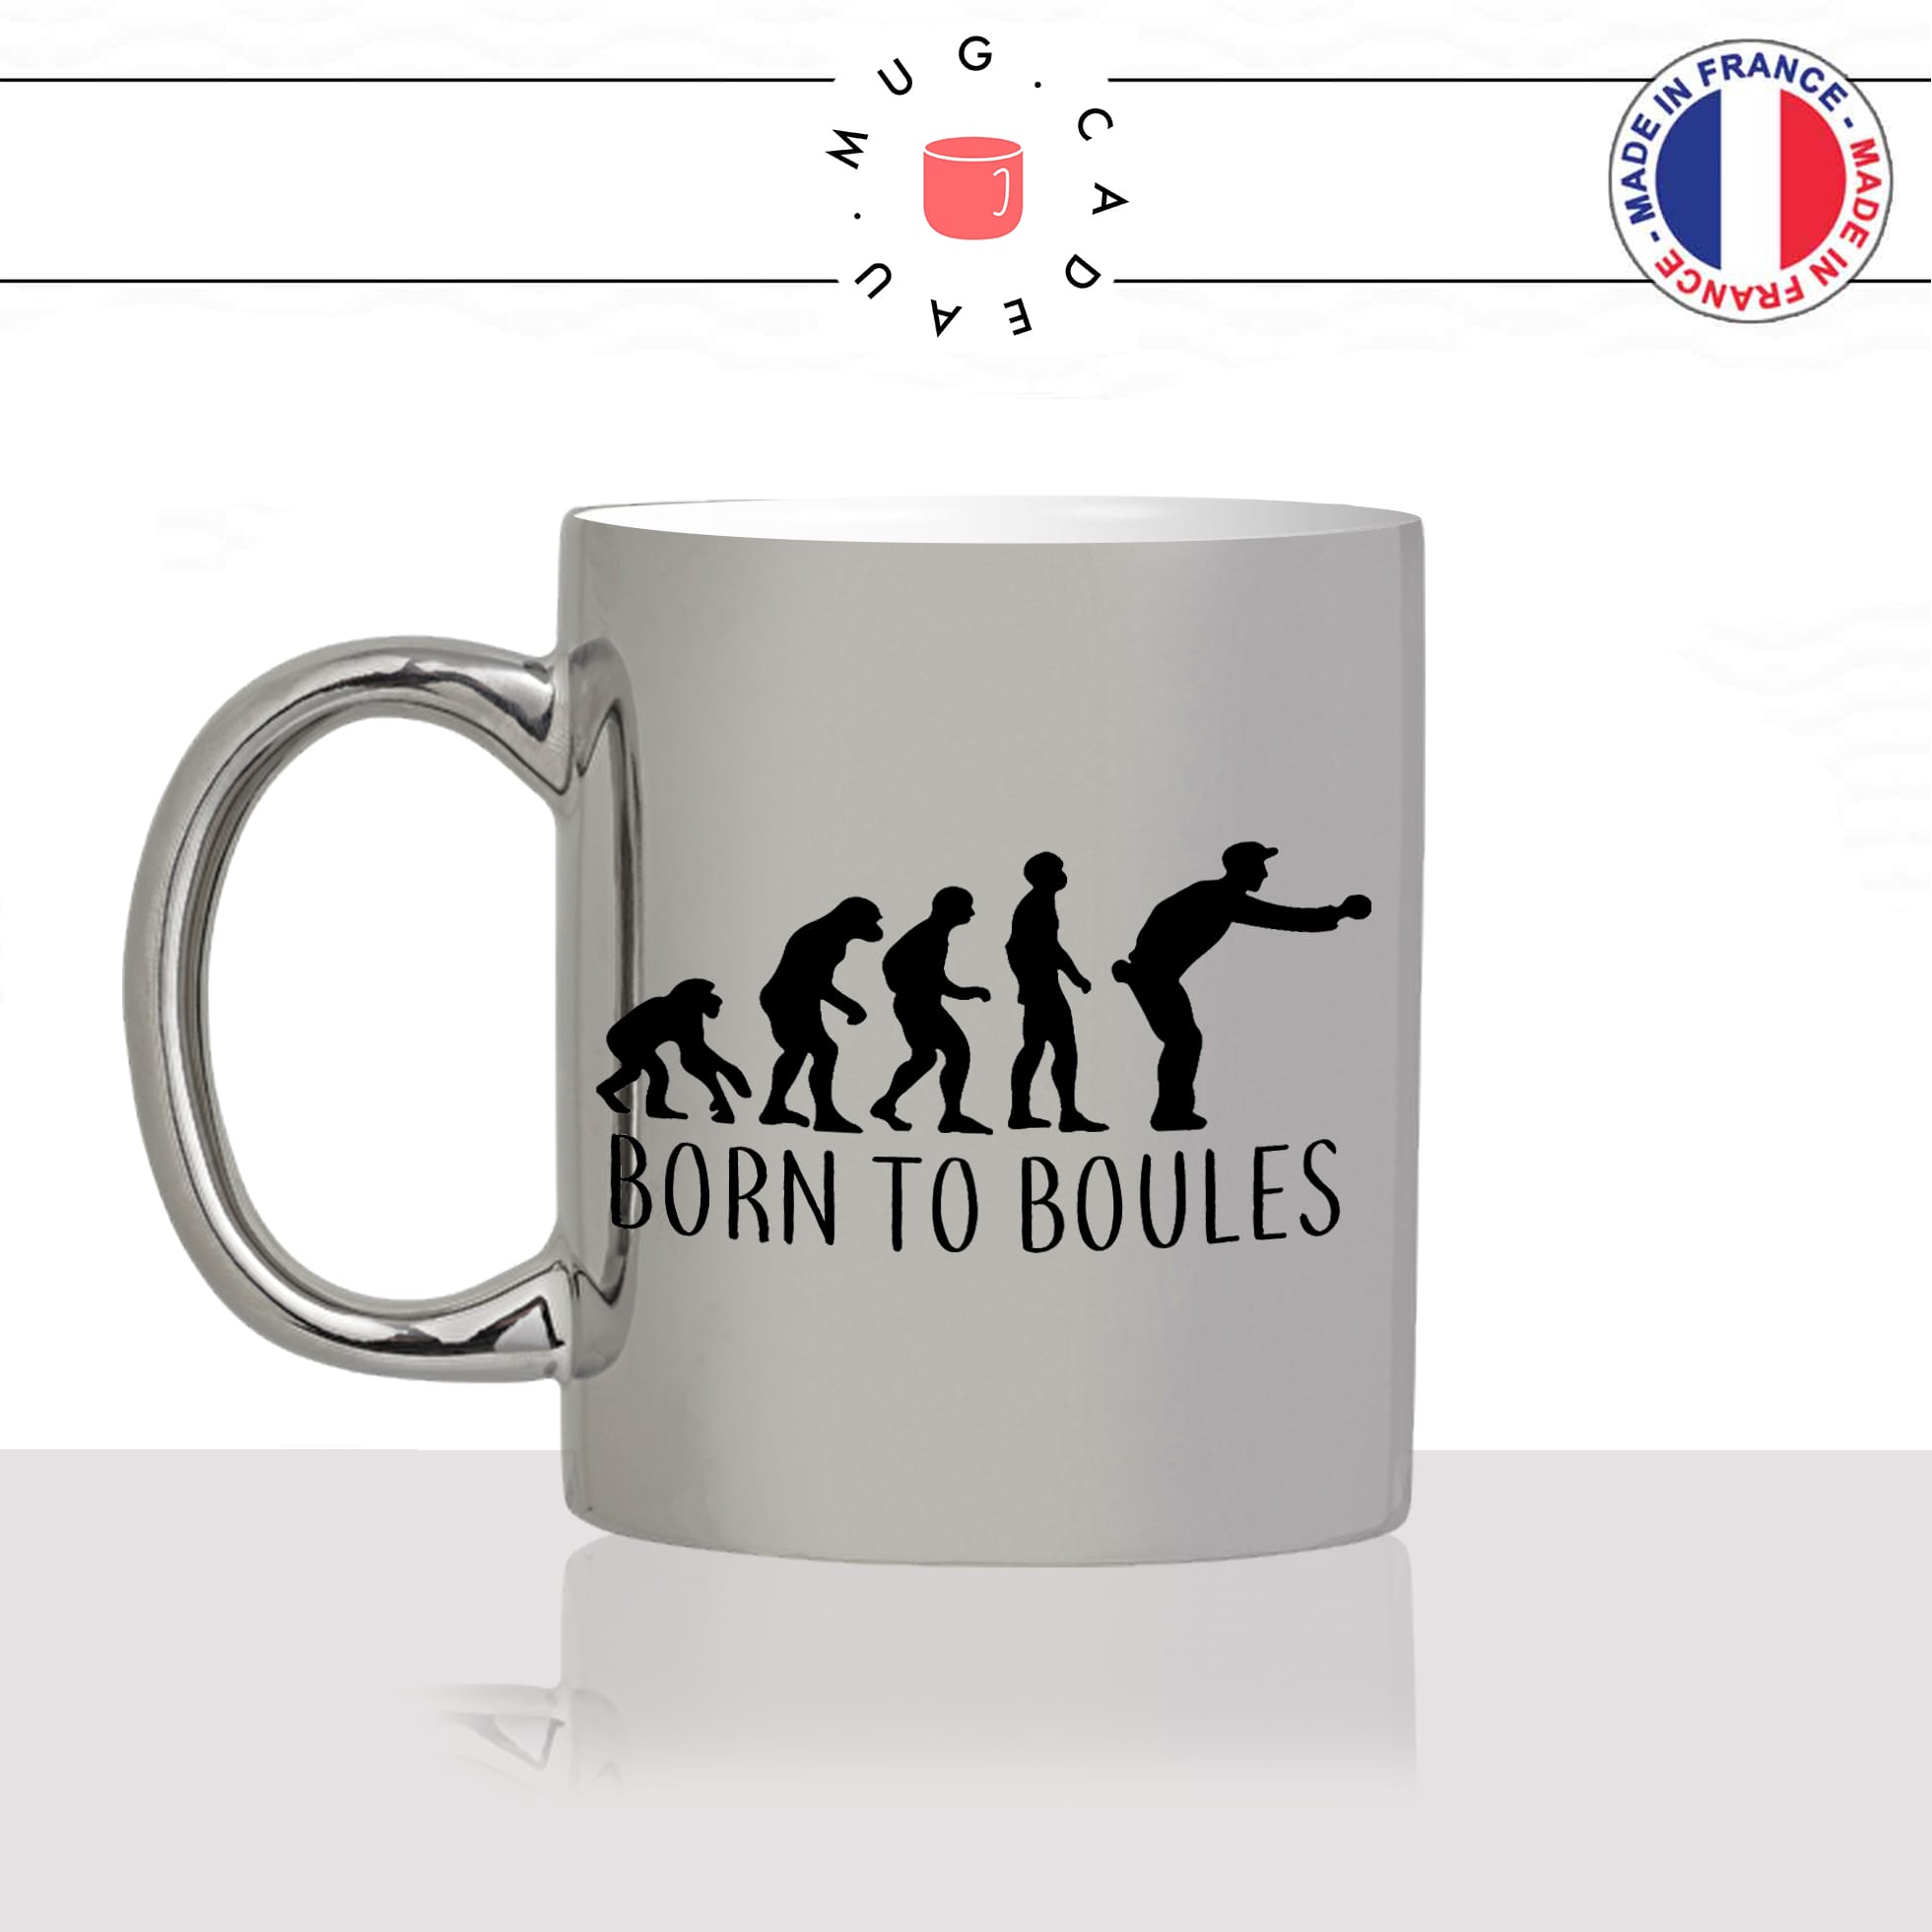 mug-tasse-argent-argenté-silver-born-to-boules-pétanque-evolution-humaine-singe-primate-humour-idée-cadeau-fun-cool-café-thé-min